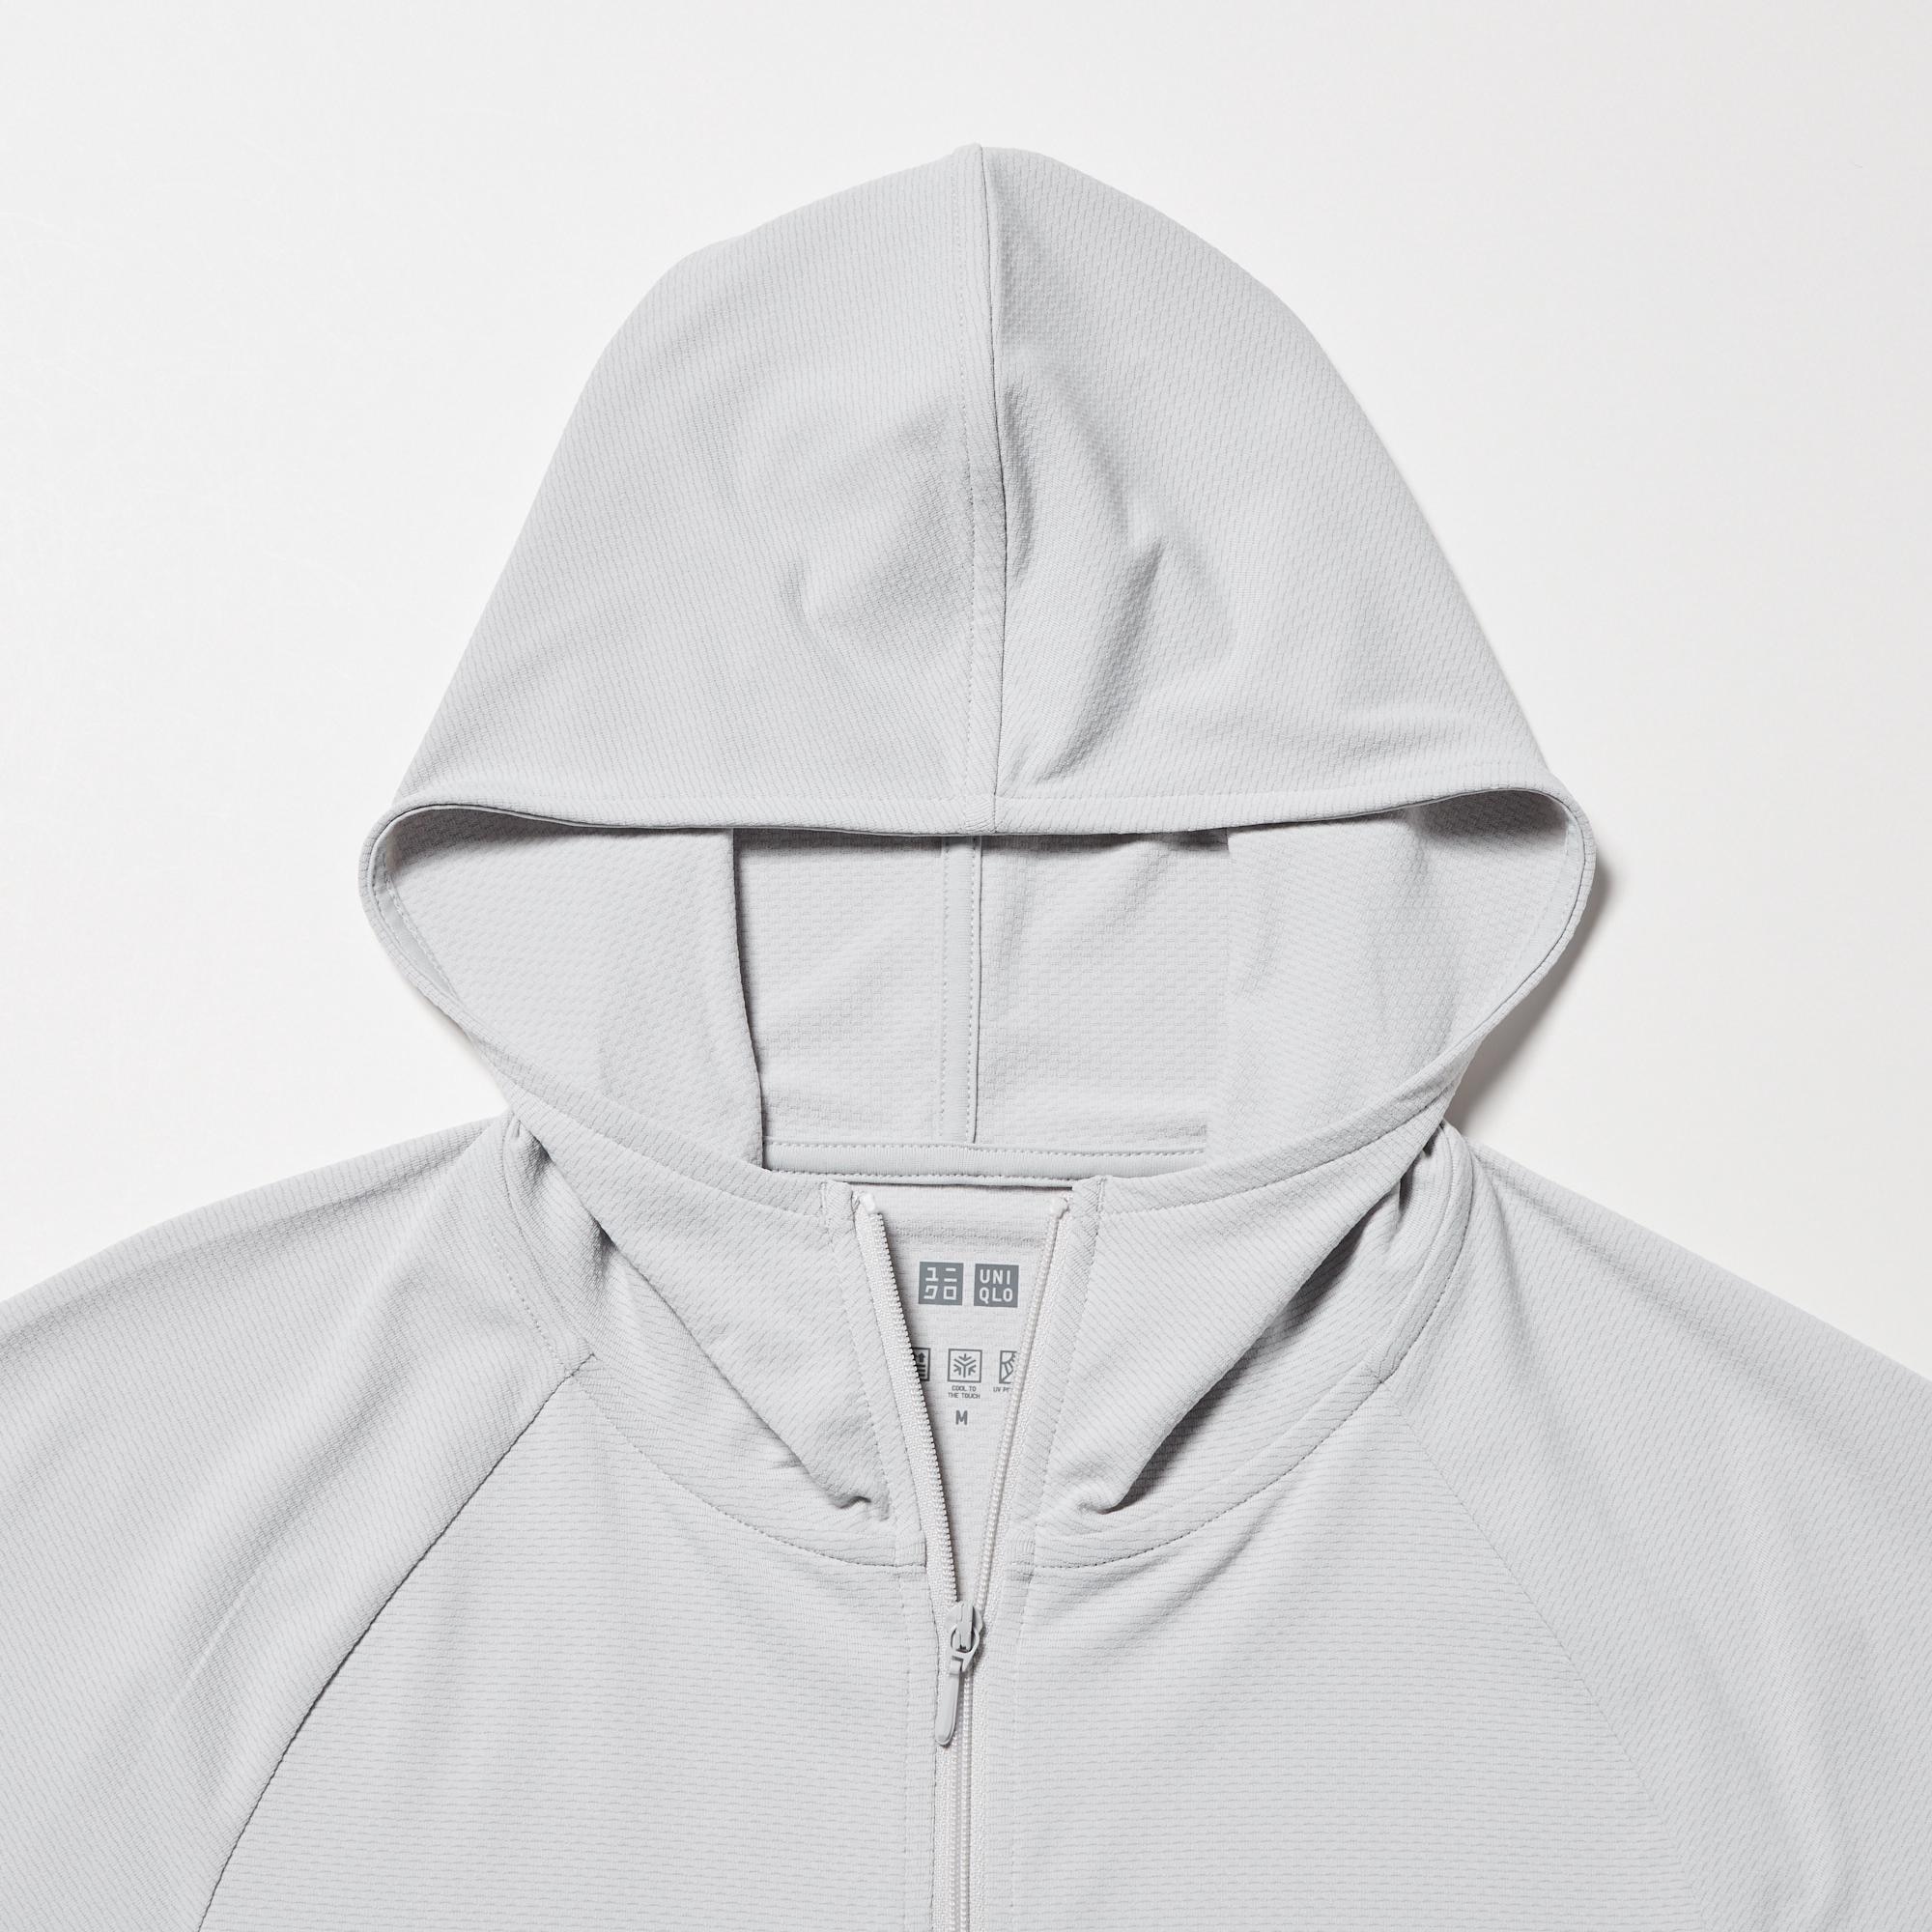 Áo khoác dù form rộng màu trắng ONTOP #Uni (Size M)